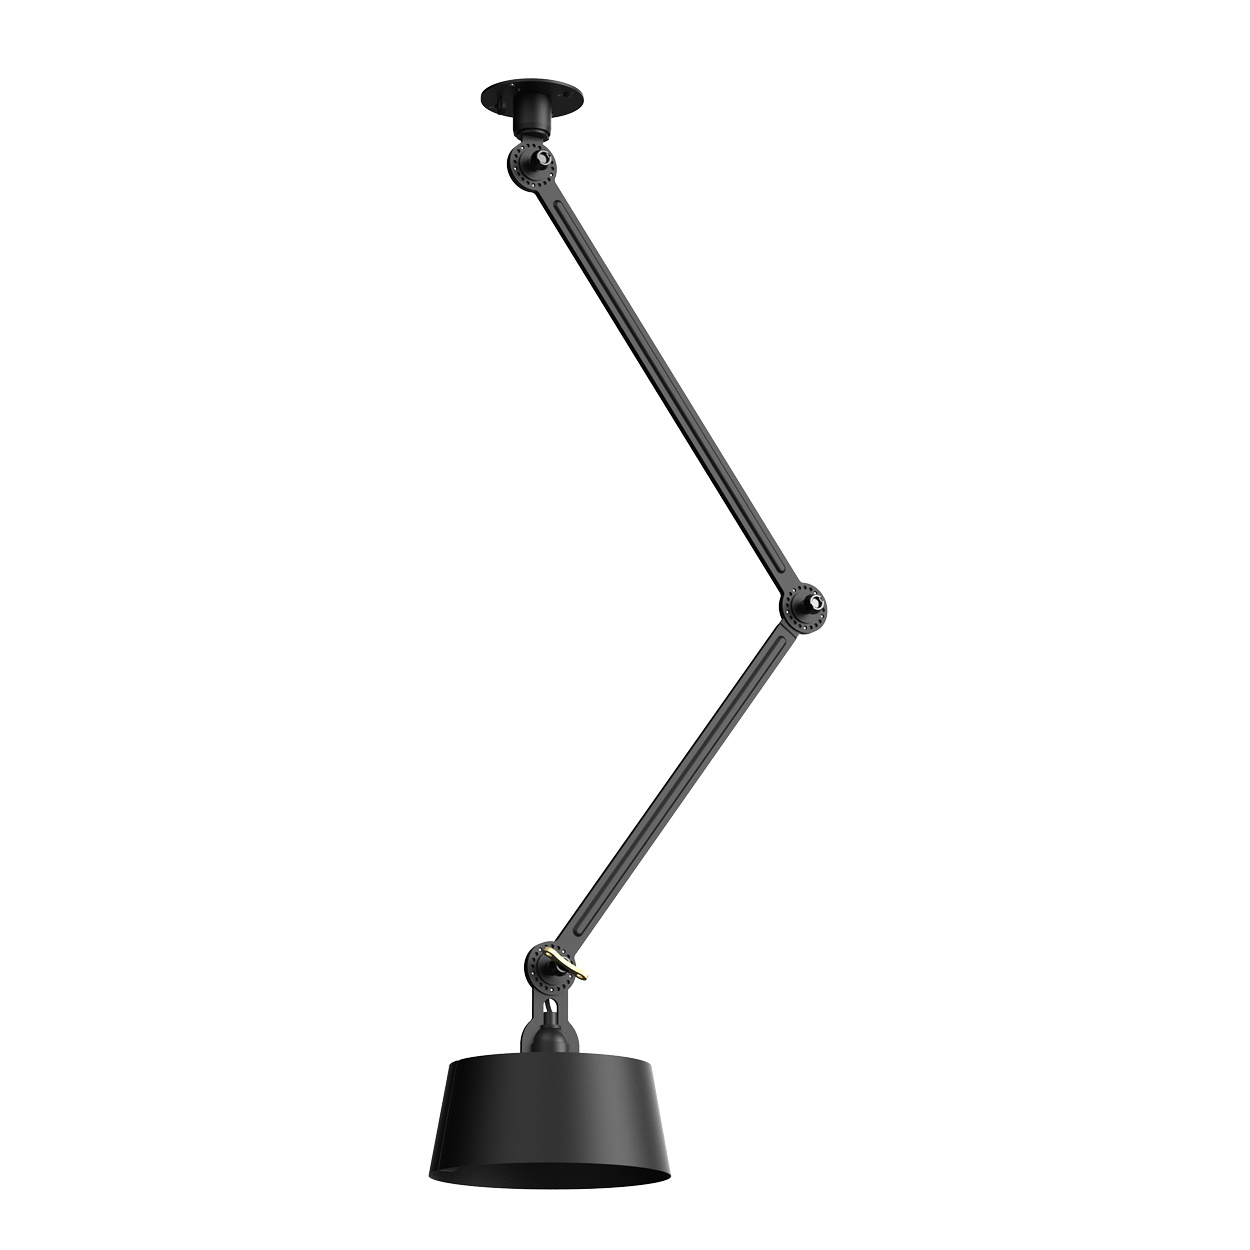 Afhaalmaaltijd uitrusting Emulatie Tonone plafondlamp Bolt Ceiling 2 arm Underfit - Direct op lichtpunt -  Designlamp.nl